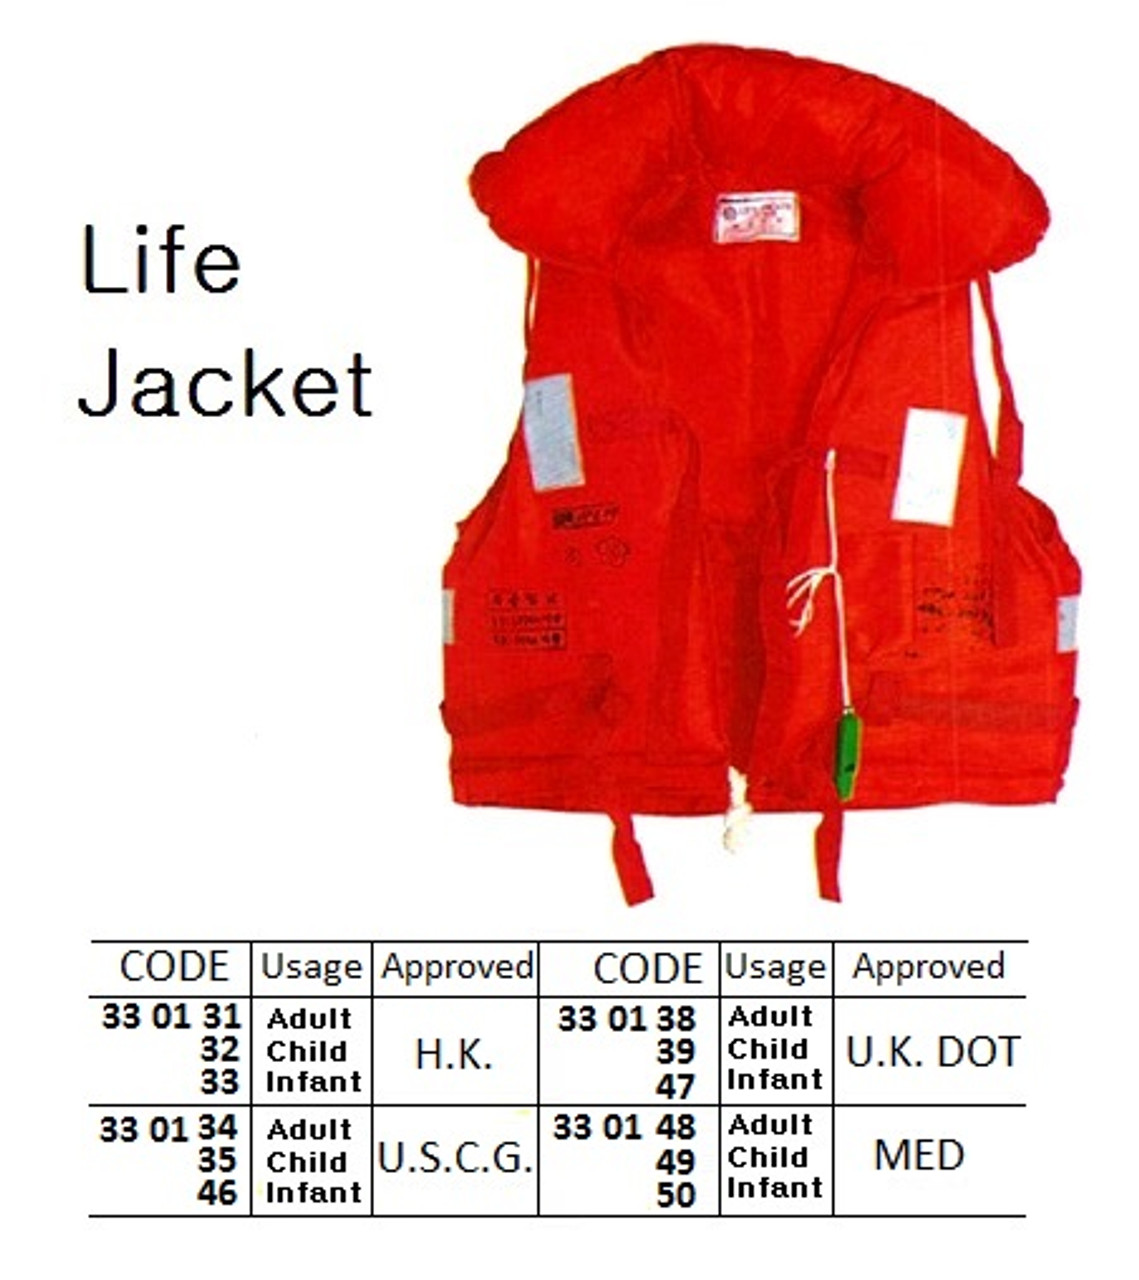 IMPA 330149 Lifejacket MED approved CHILD